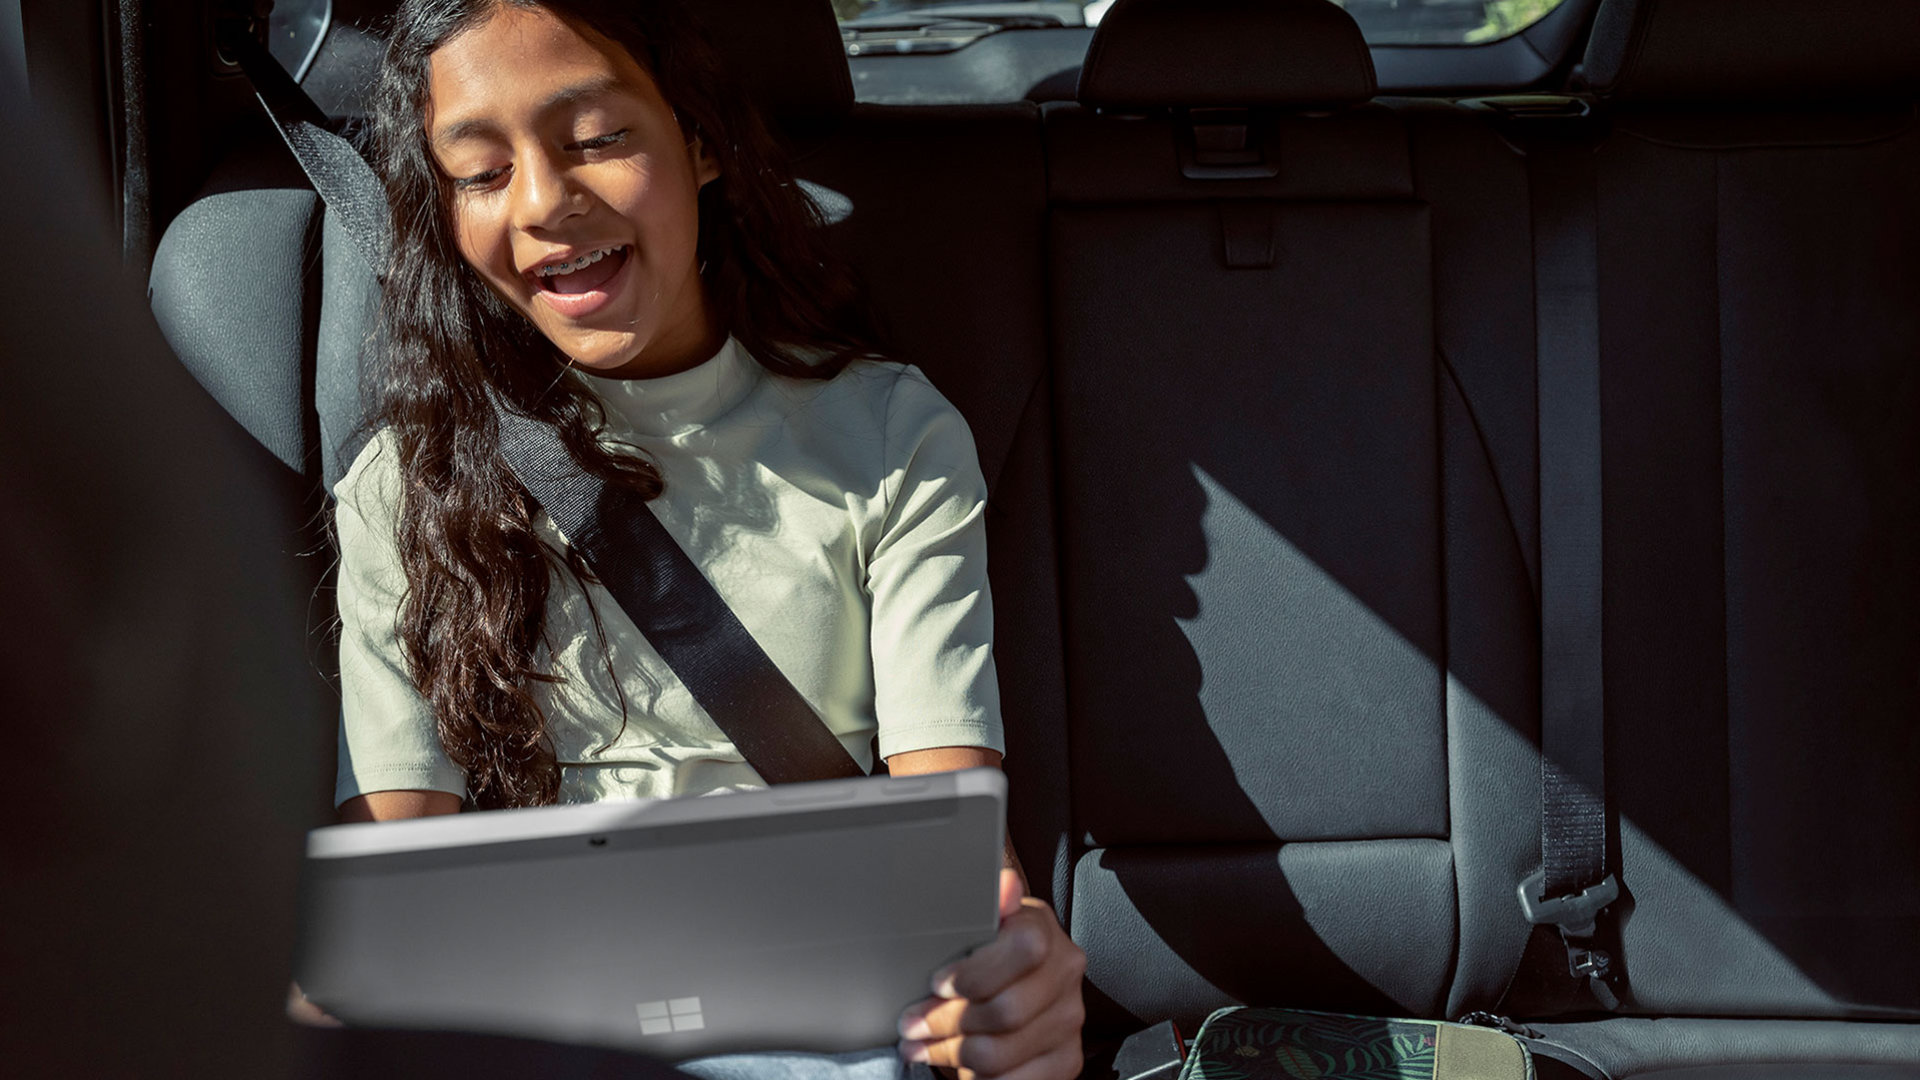 Enfant utilisant une Surface Go 3 dans la voiture.